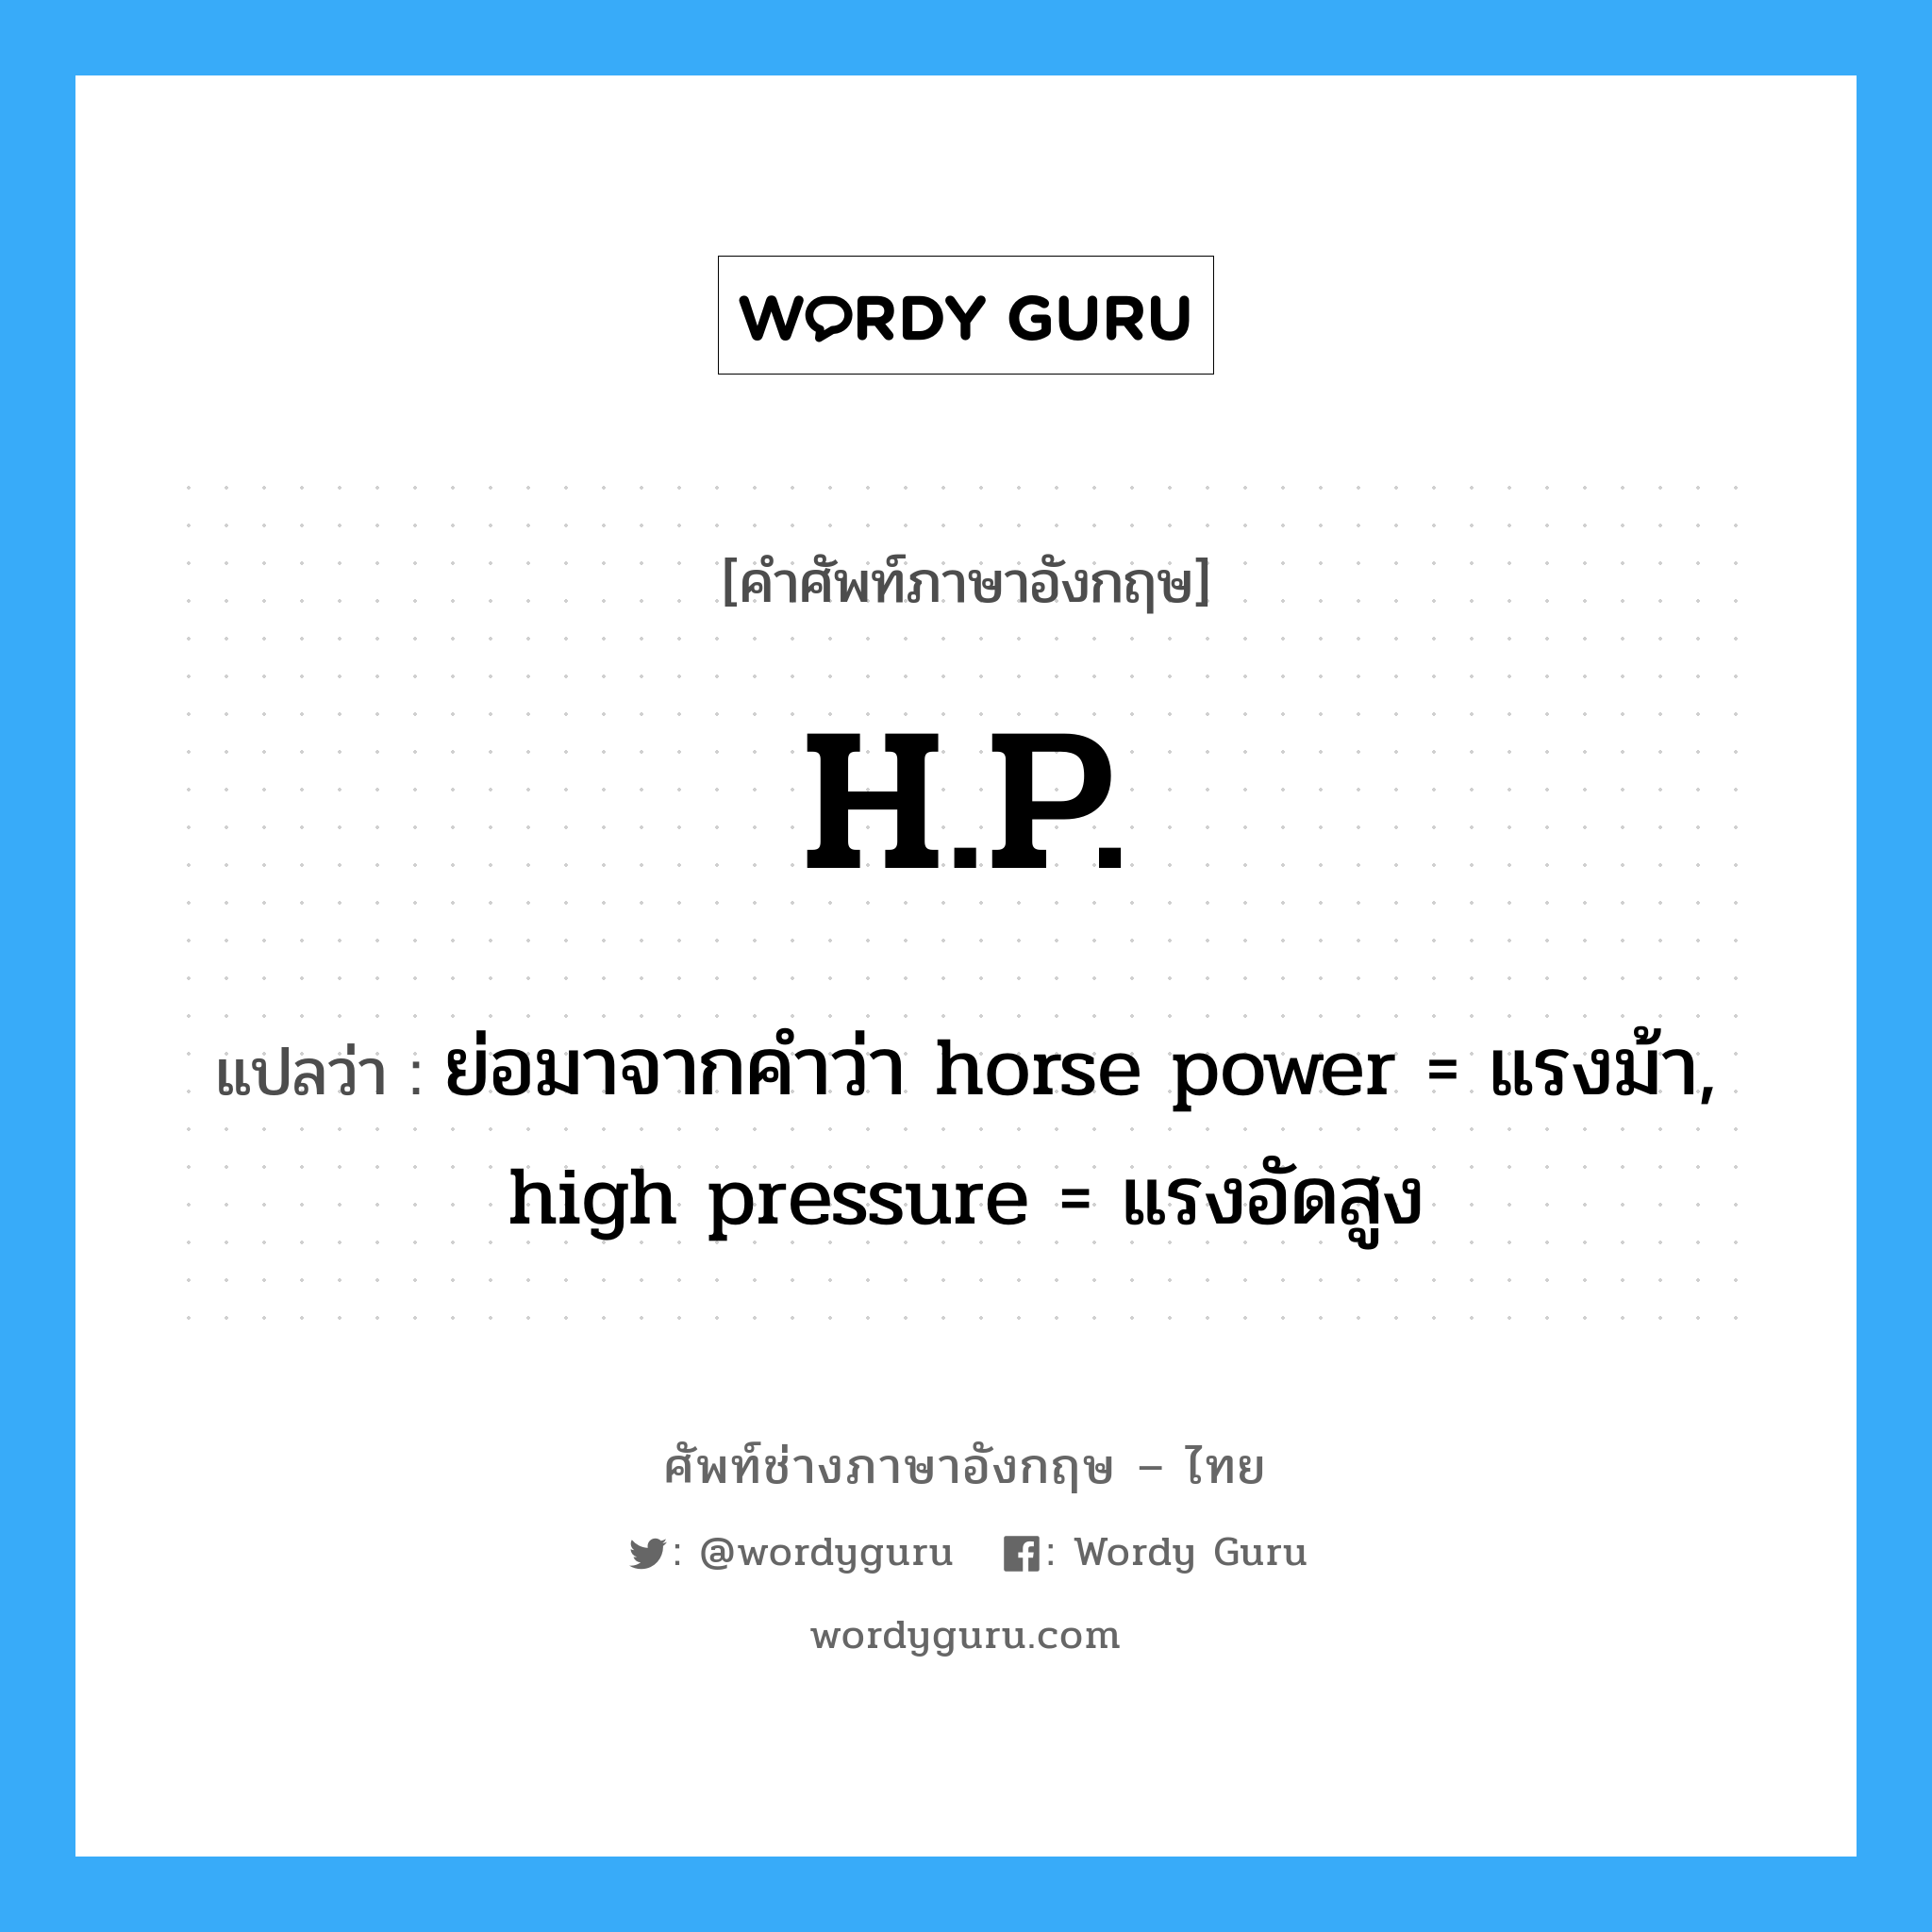 ย่อมาจากคำว่า horse power = แรงม้า, high pressure = แรงอัดสูง ภาษาอังกฤษ?, คำศัพท์ช่างภาษาอังกฤษ - ไทย ย่อมาจากคำว่า horse power = แรงม้า, high pressure = แรงอัดสูง คำศัพท์ภาษาอังกฤษ ย่อมาจากคำว่า horse power = แรงม้า, high pressure = แรงอัดสูง แปลว่า H.P.